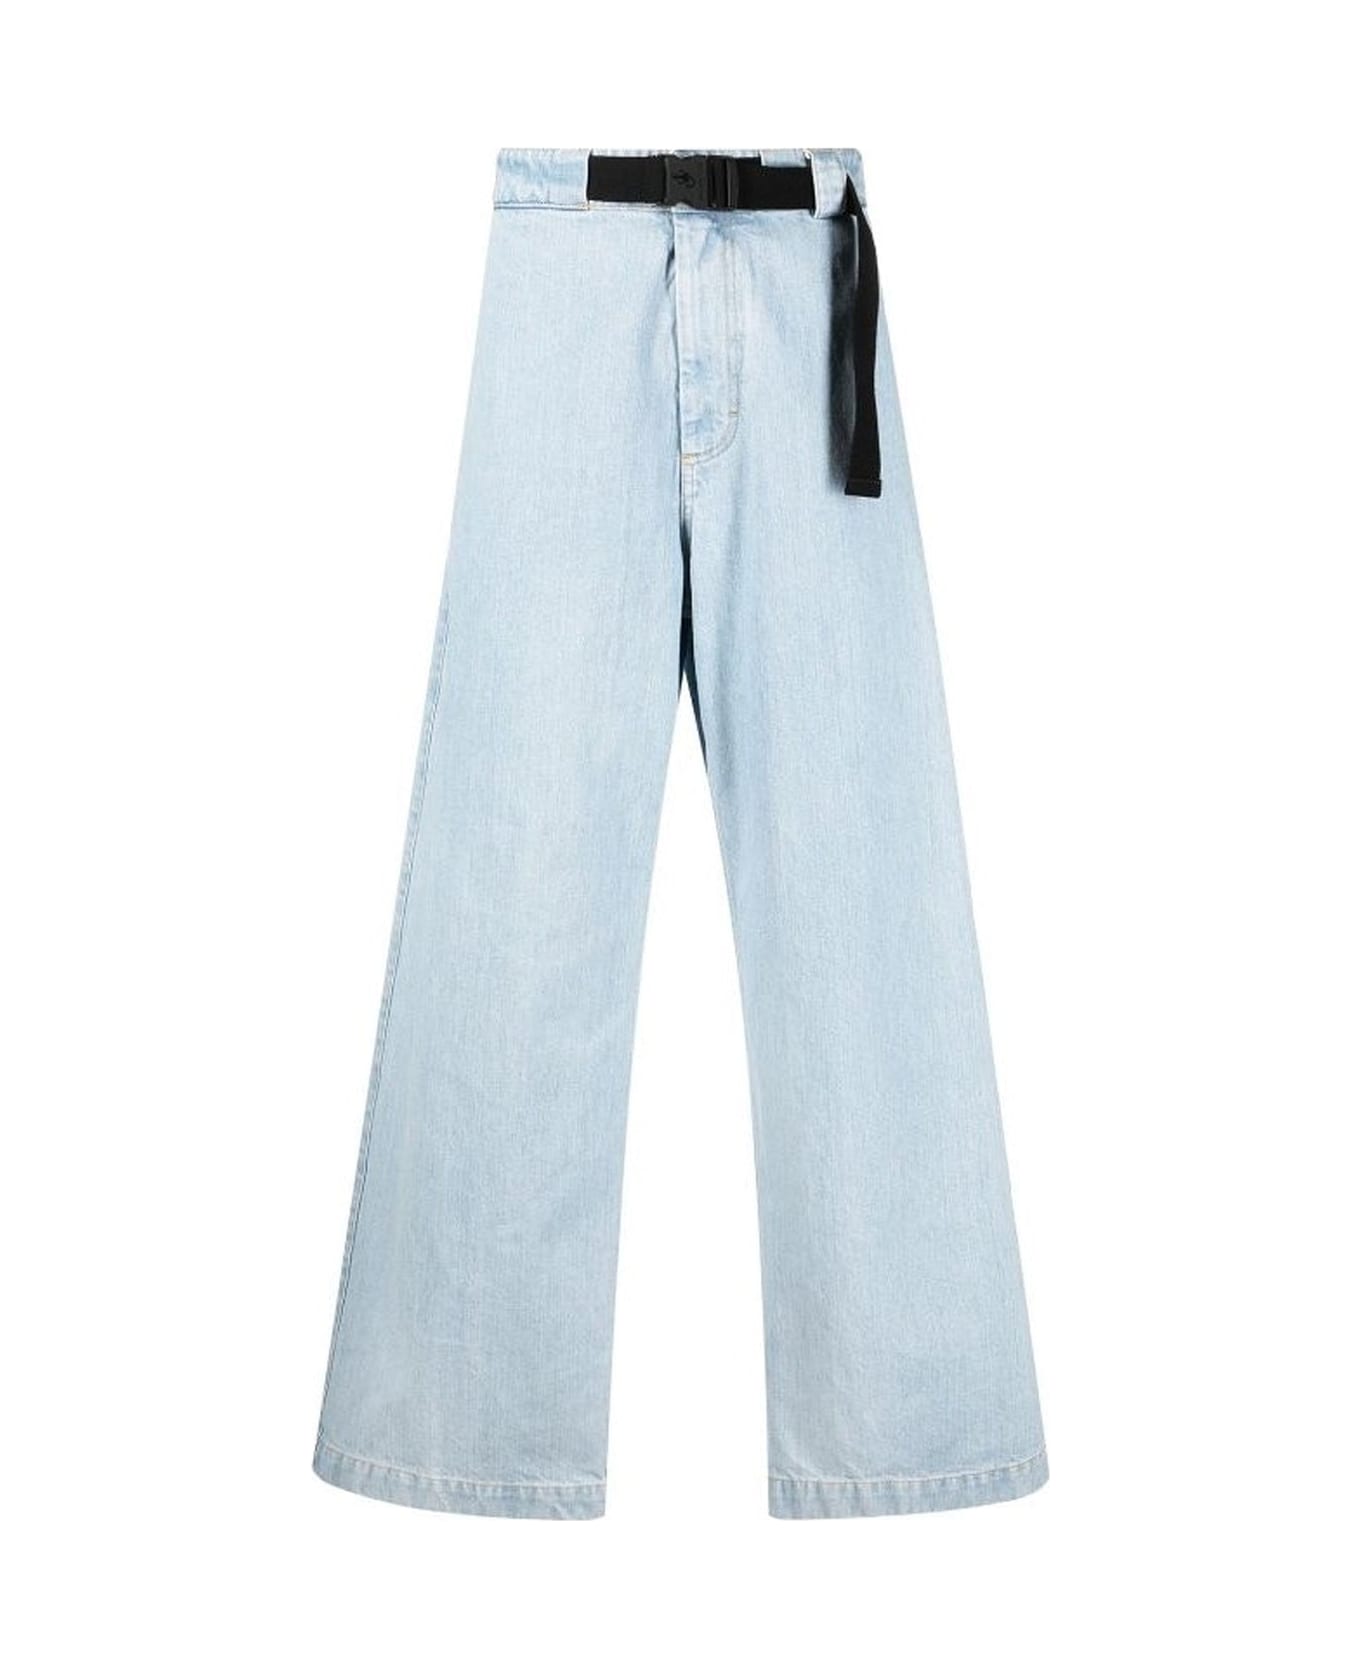 Moncler Belted Denim Jeans - Blue デニム